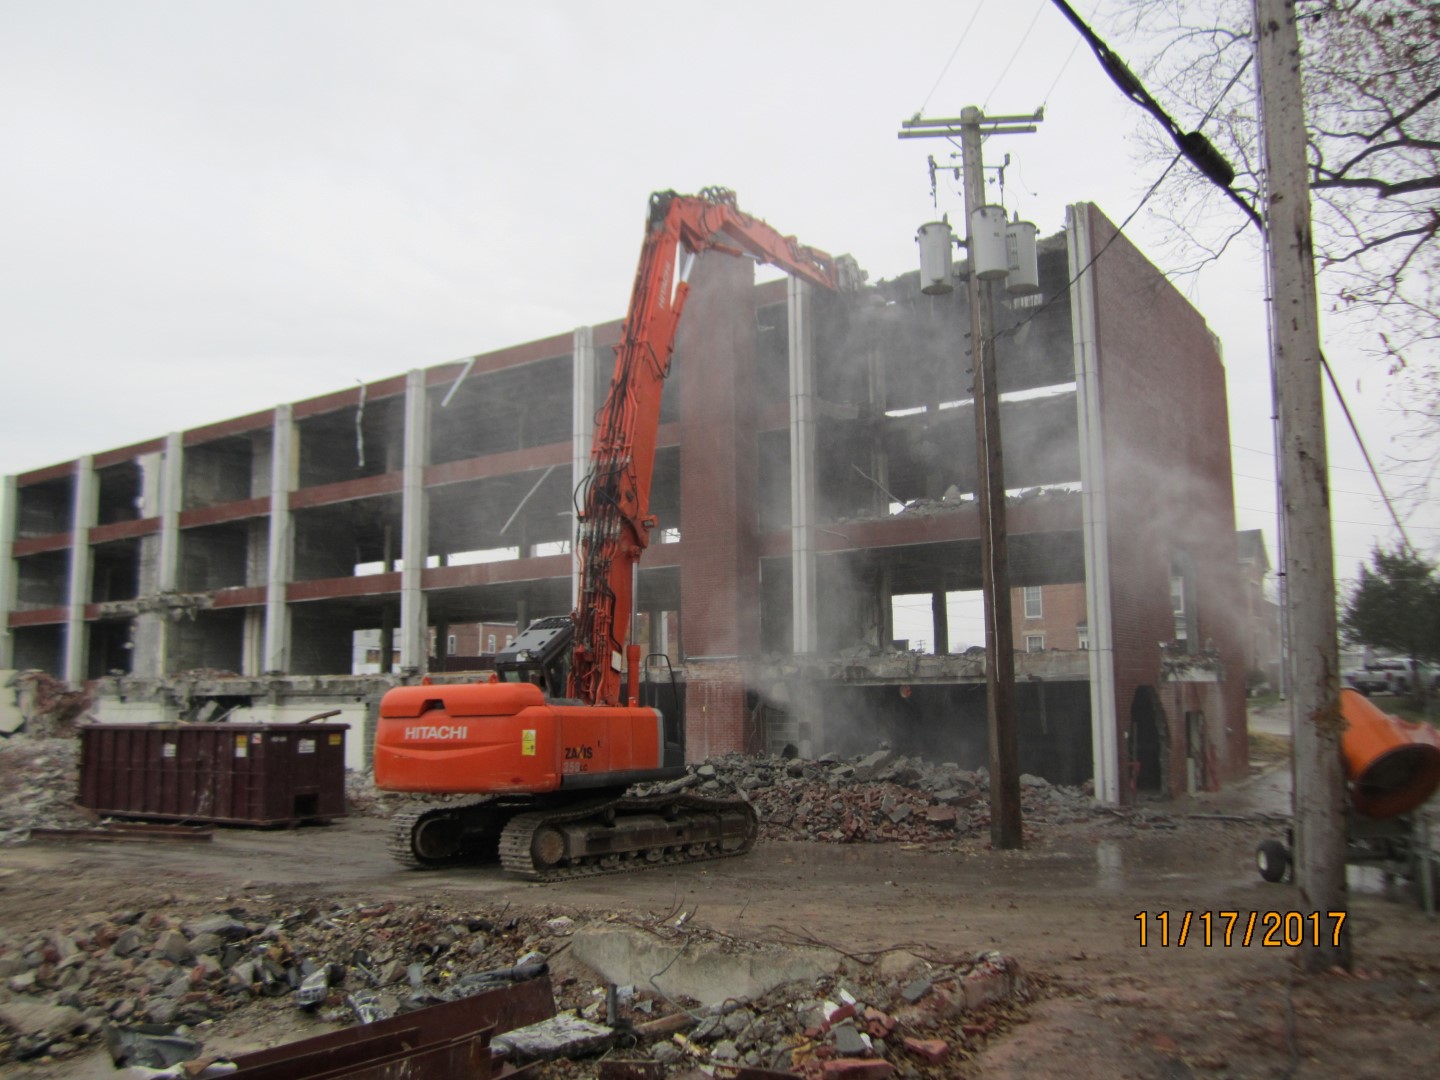 High Reach Demolition - Earth Services, Benton, Illinois